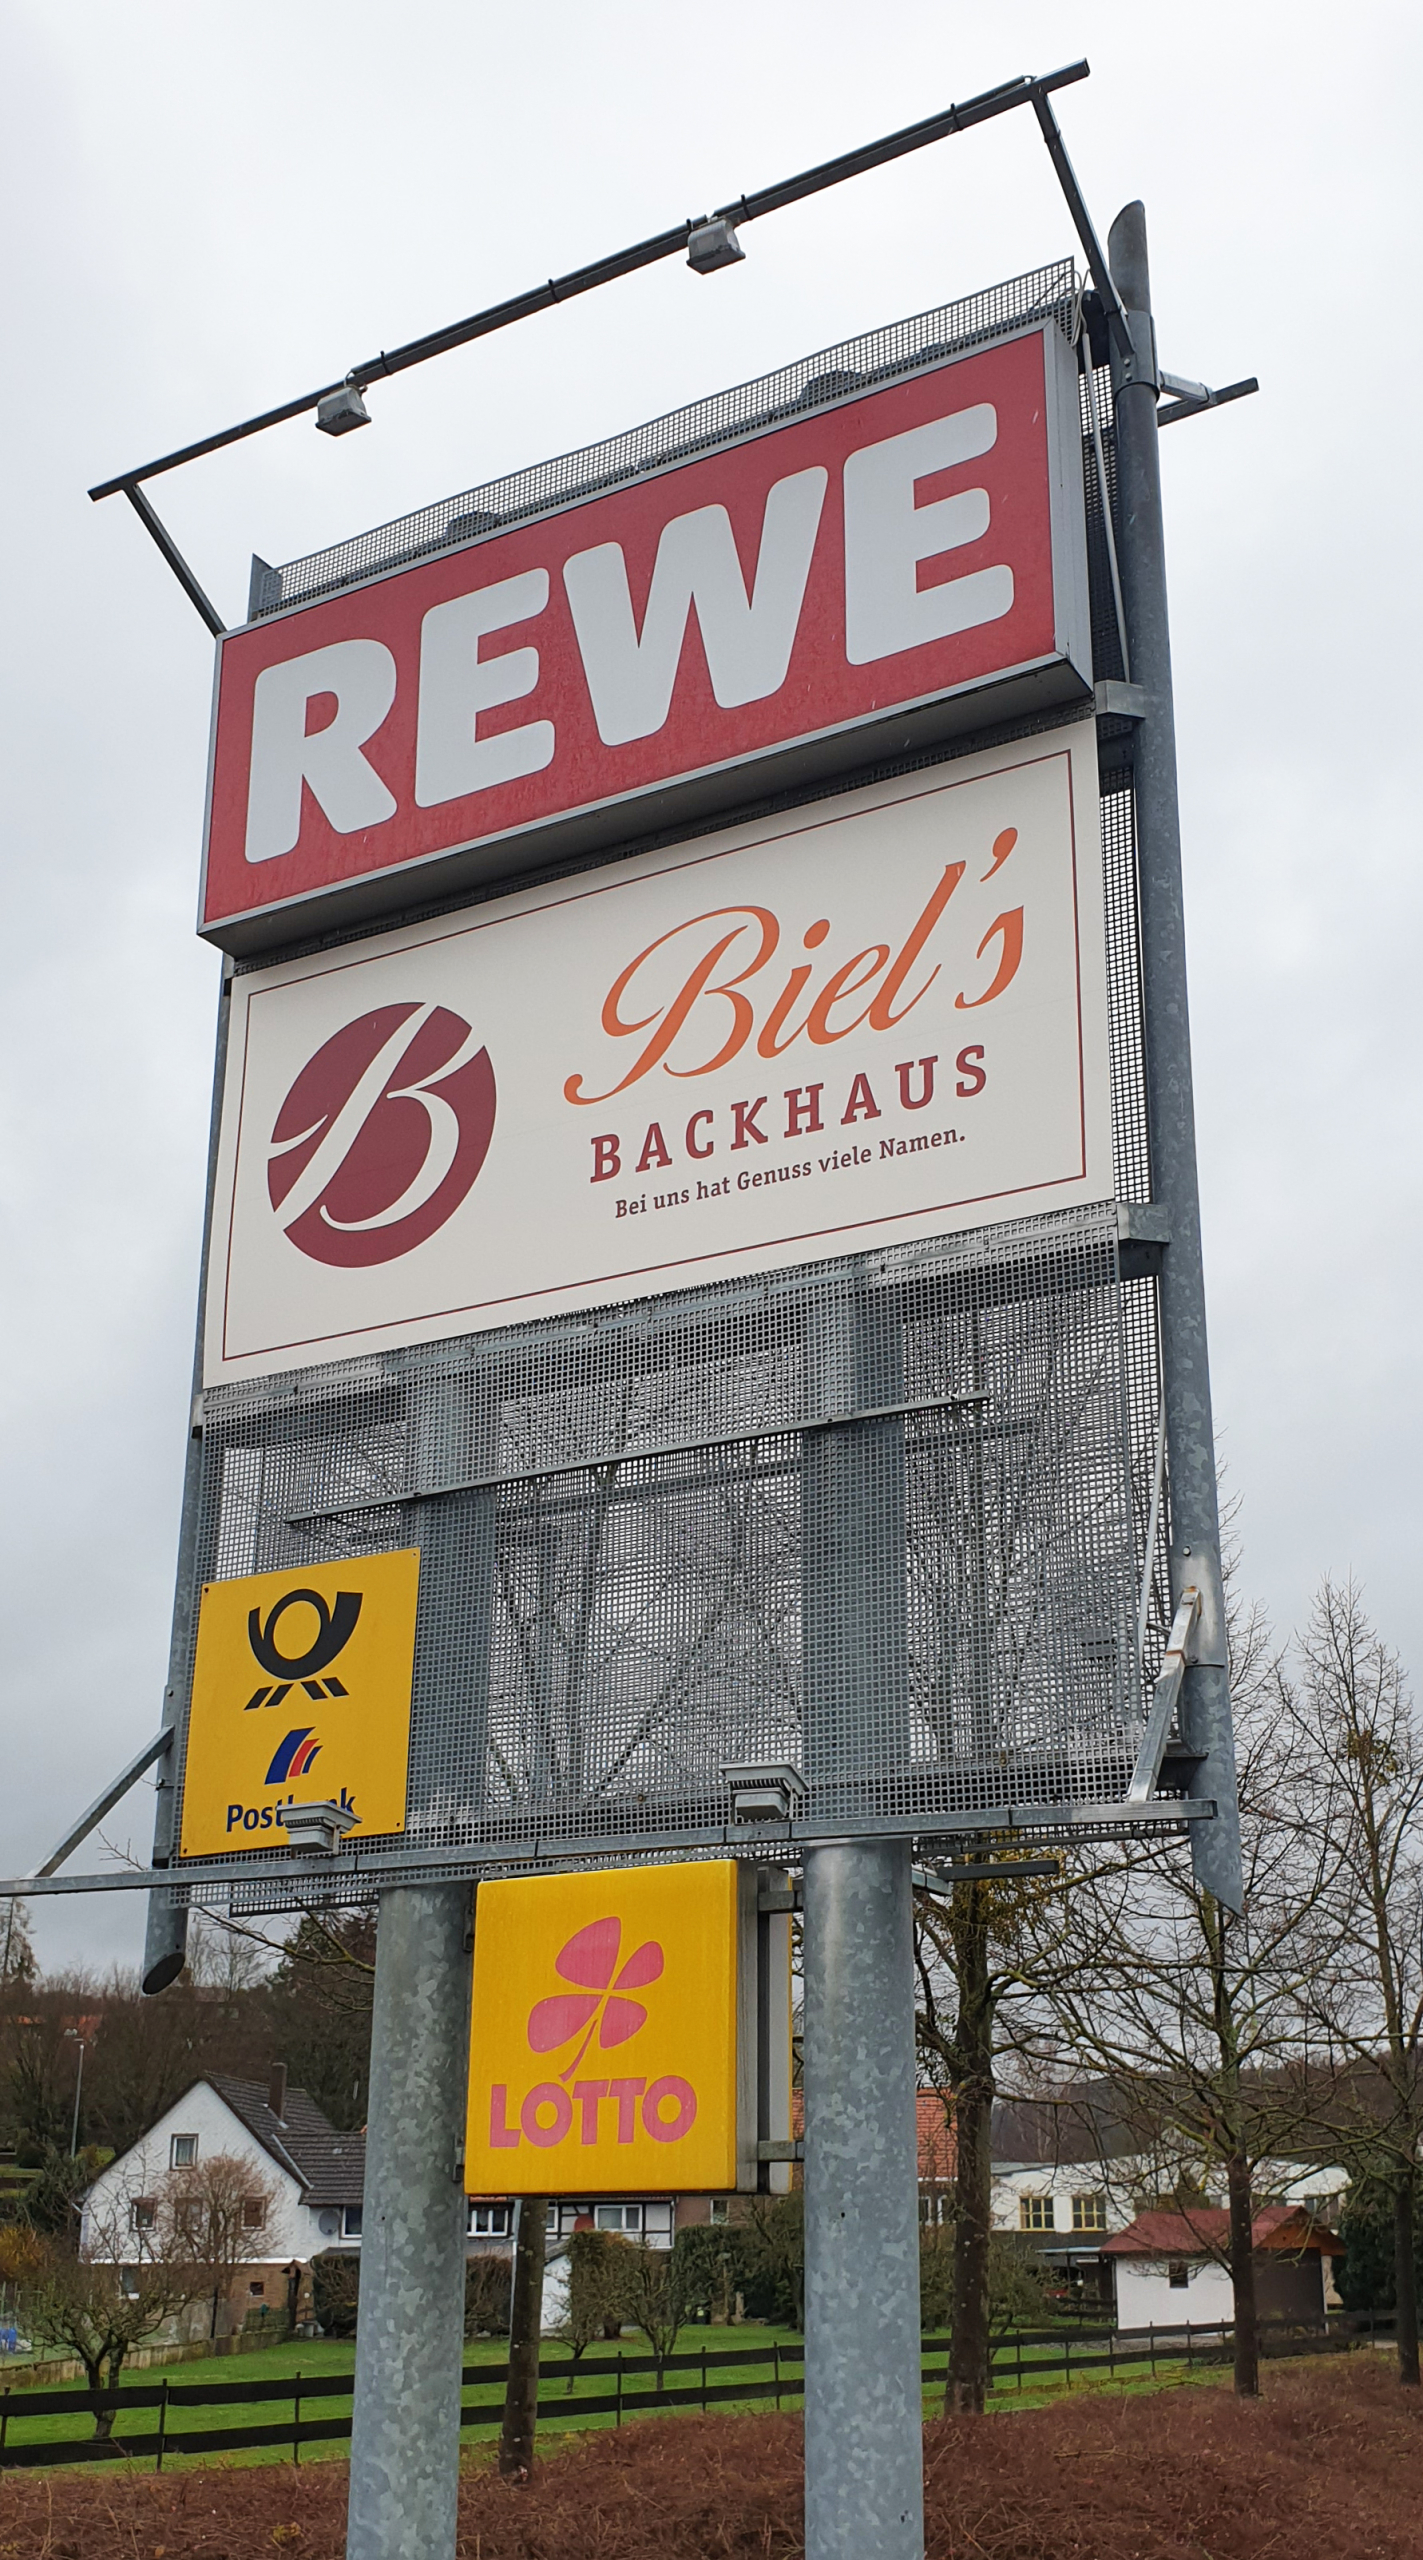 Neues Schild für.Biel's Backhaus Kreiensen von der Weber Werbung aus Delligsen bei Hannover